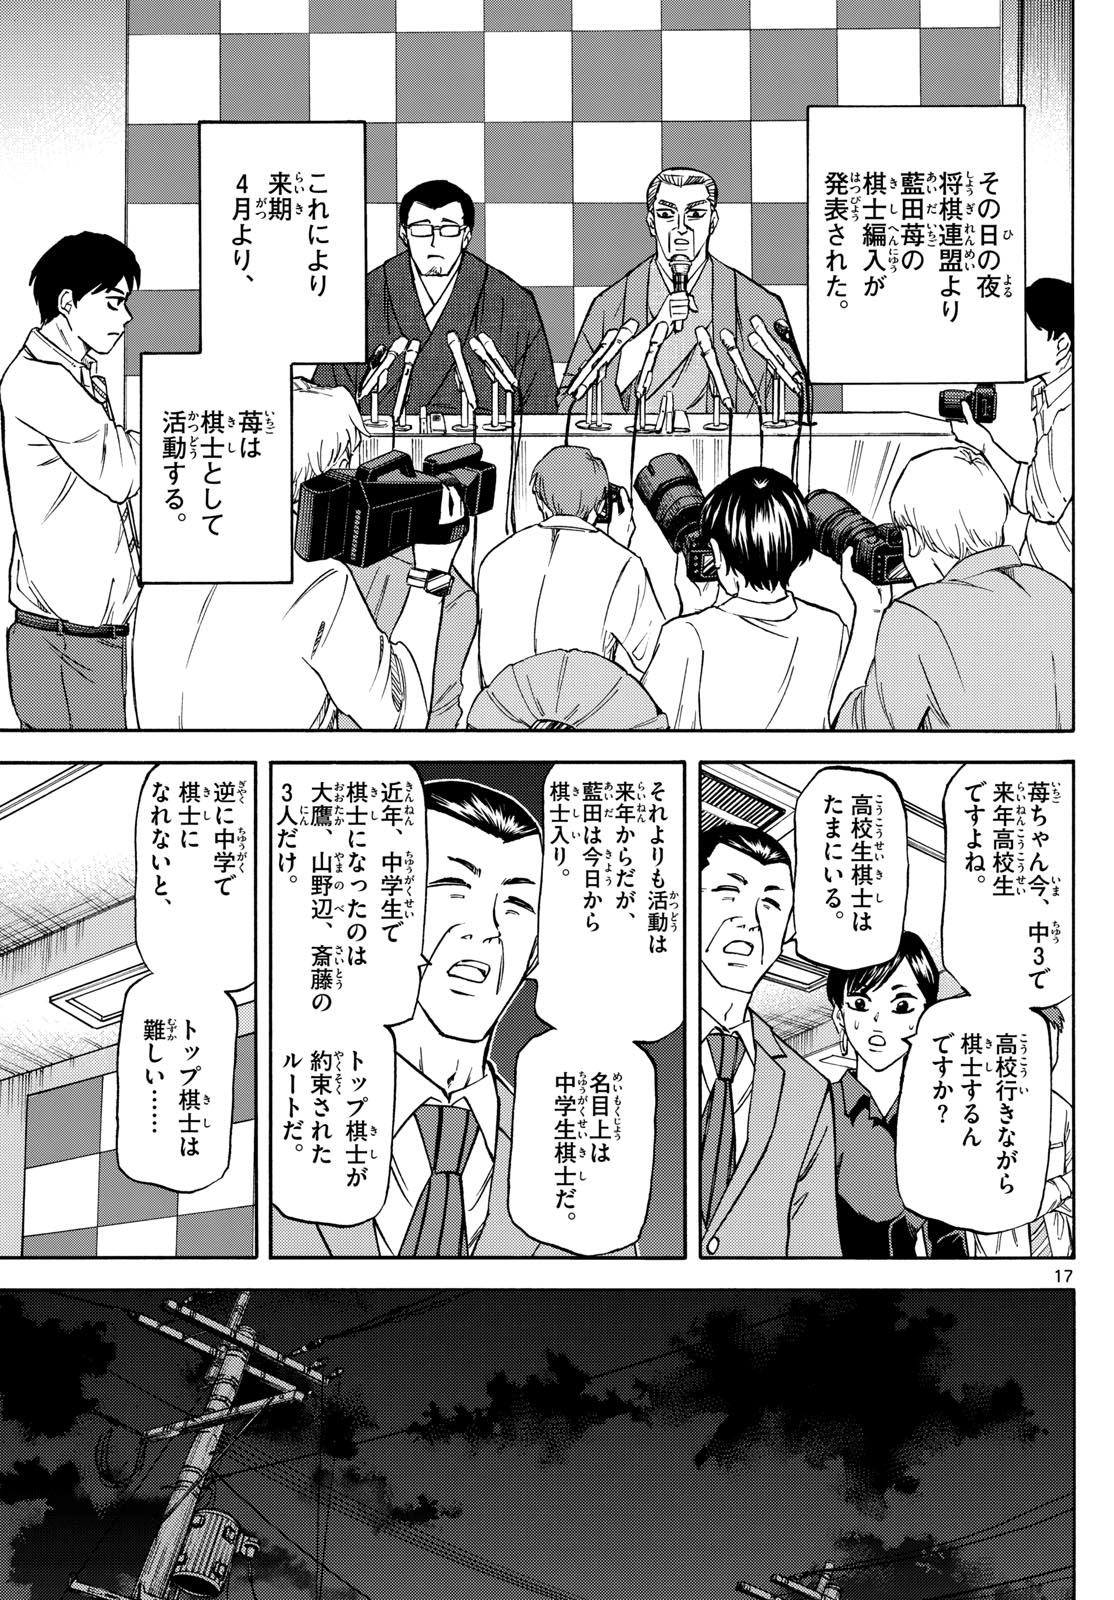 Tatsu to Ichigo - Chapter 180 - Page 17